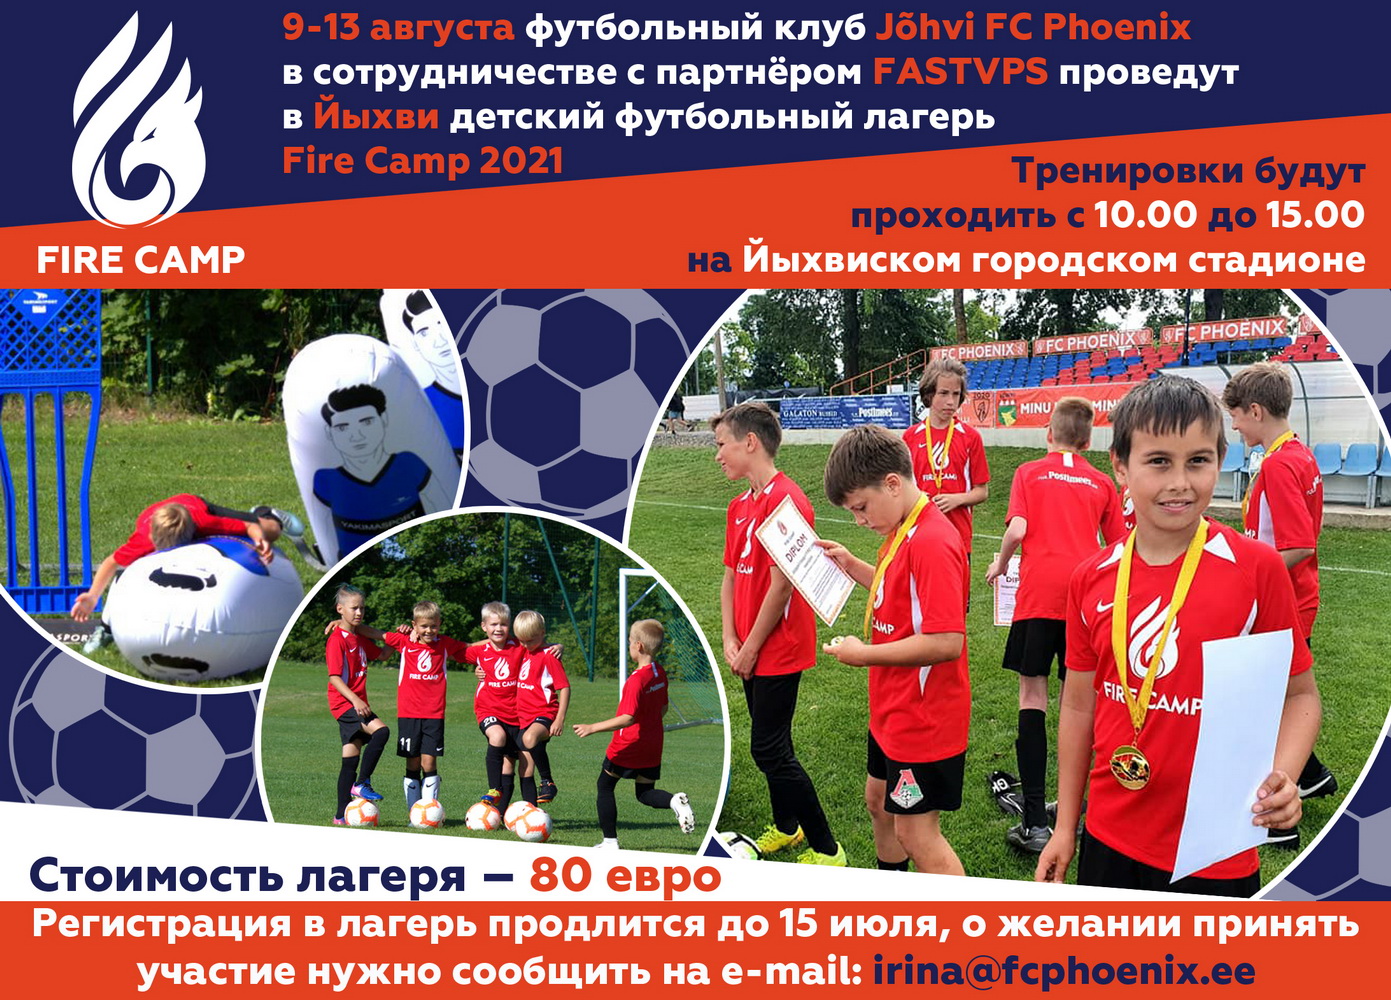 Приглашаем принять участие в летнем футбольном лагере Fire Camp 2021